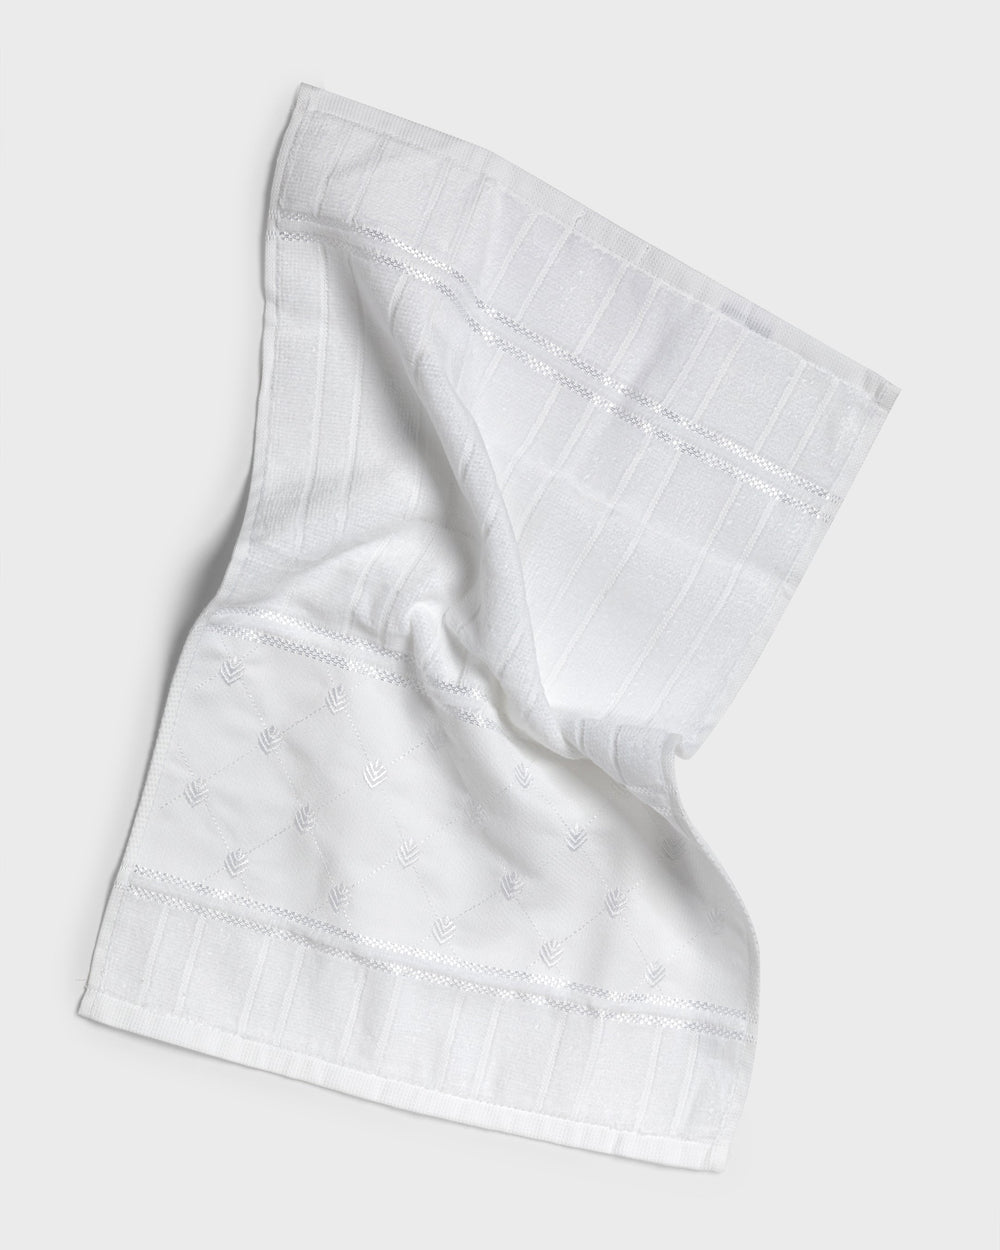 Tania Bulhoes Cloth Hand Towel Trelica 3 Piece Set